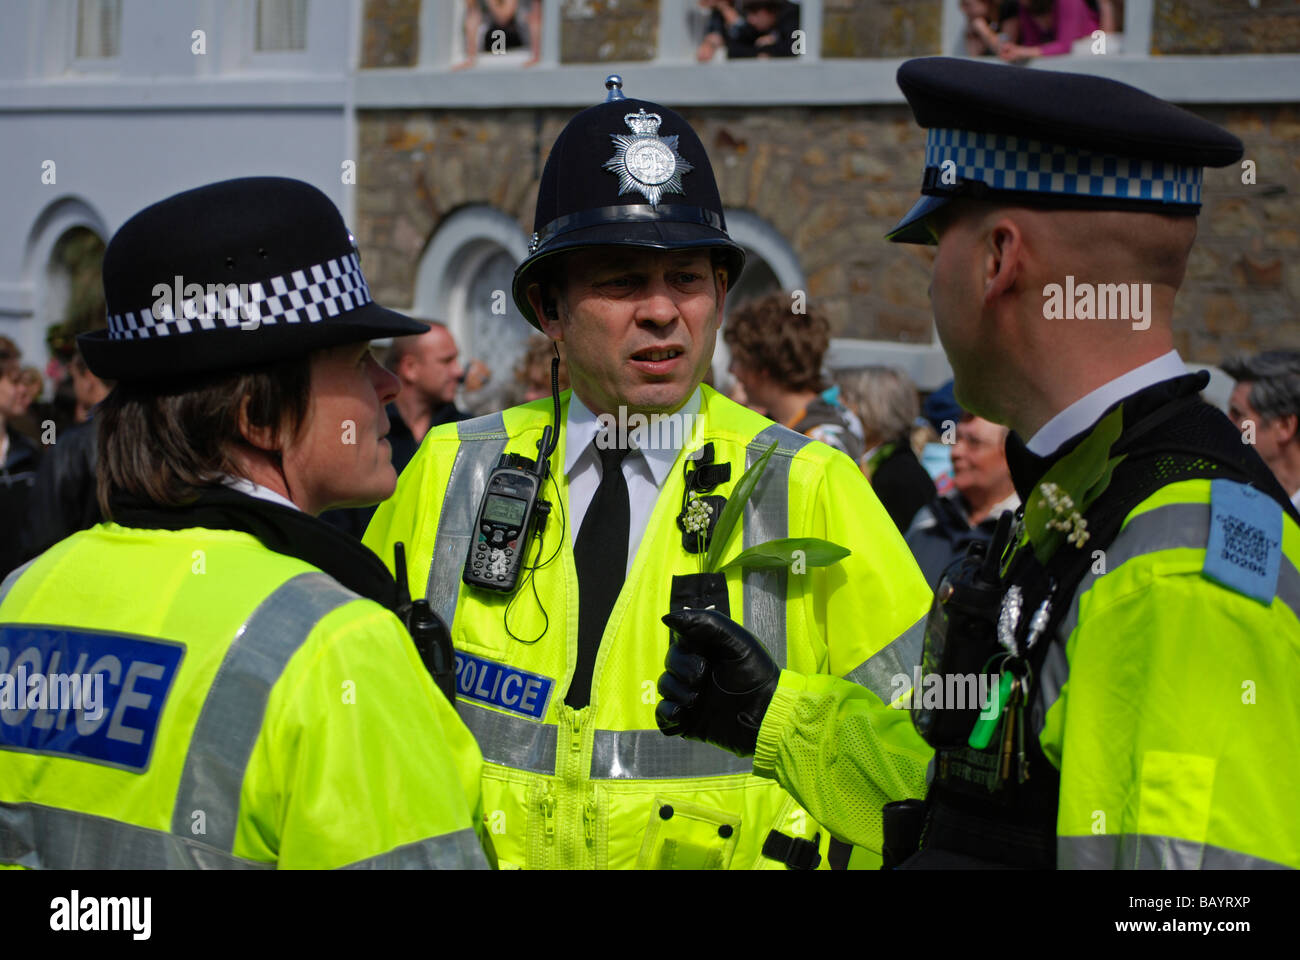 La policía británica sobre el deber de control de multitudes en la flora helston día,helston, Cornwall, UK Foto de stock